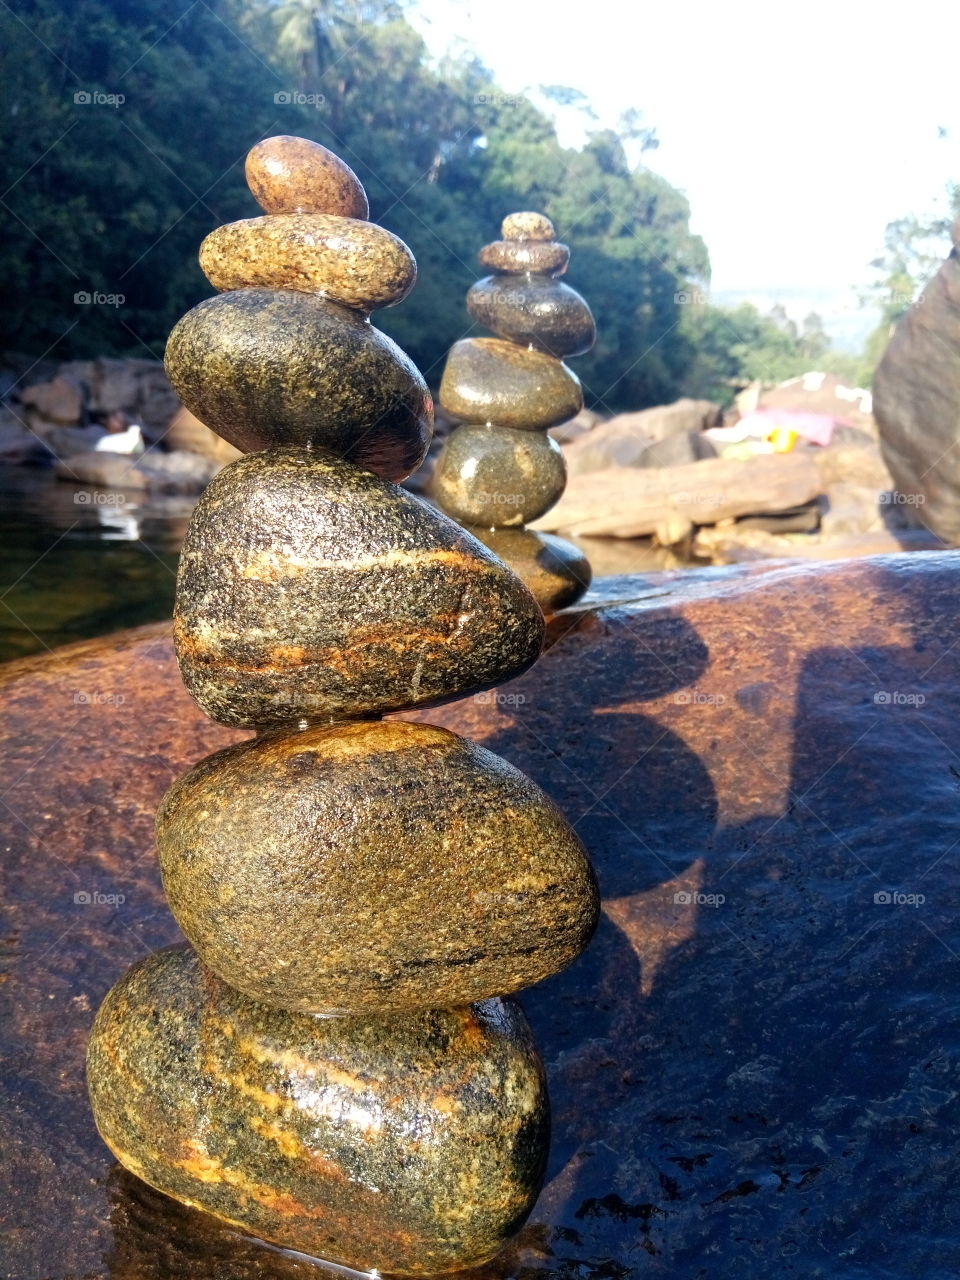 beautiful river rock art